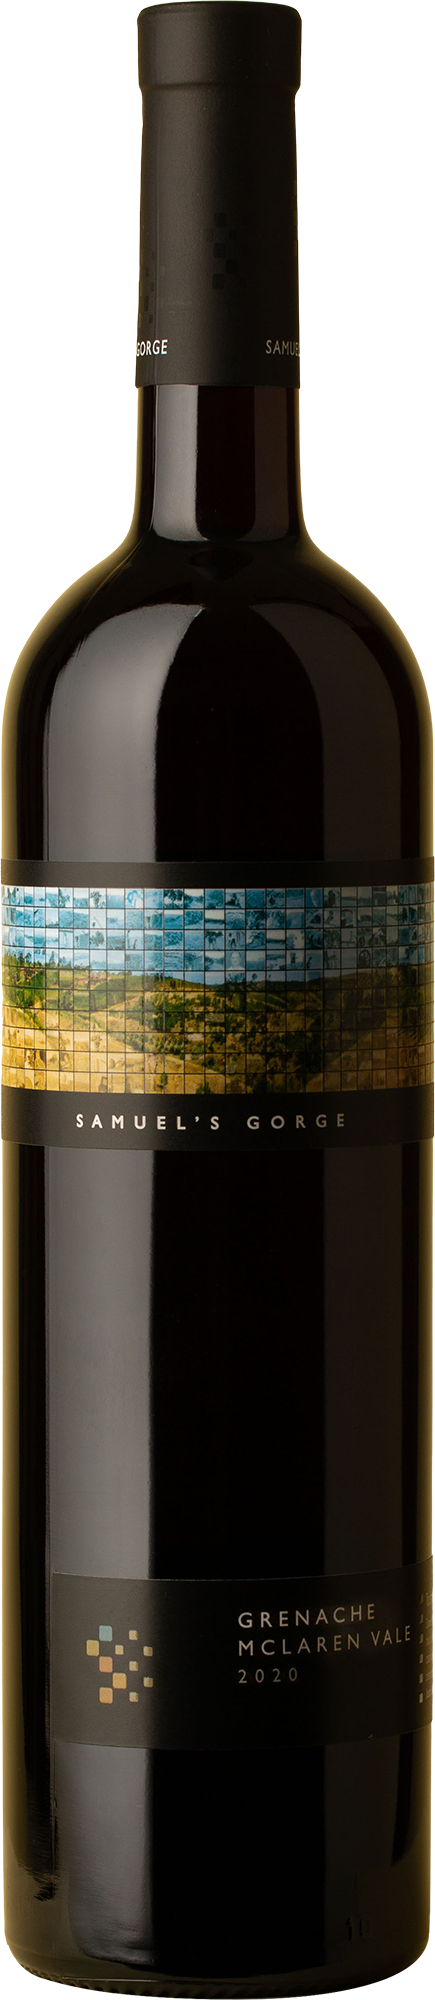 Samuel's Gorge - Grenache 2021 Red Wine